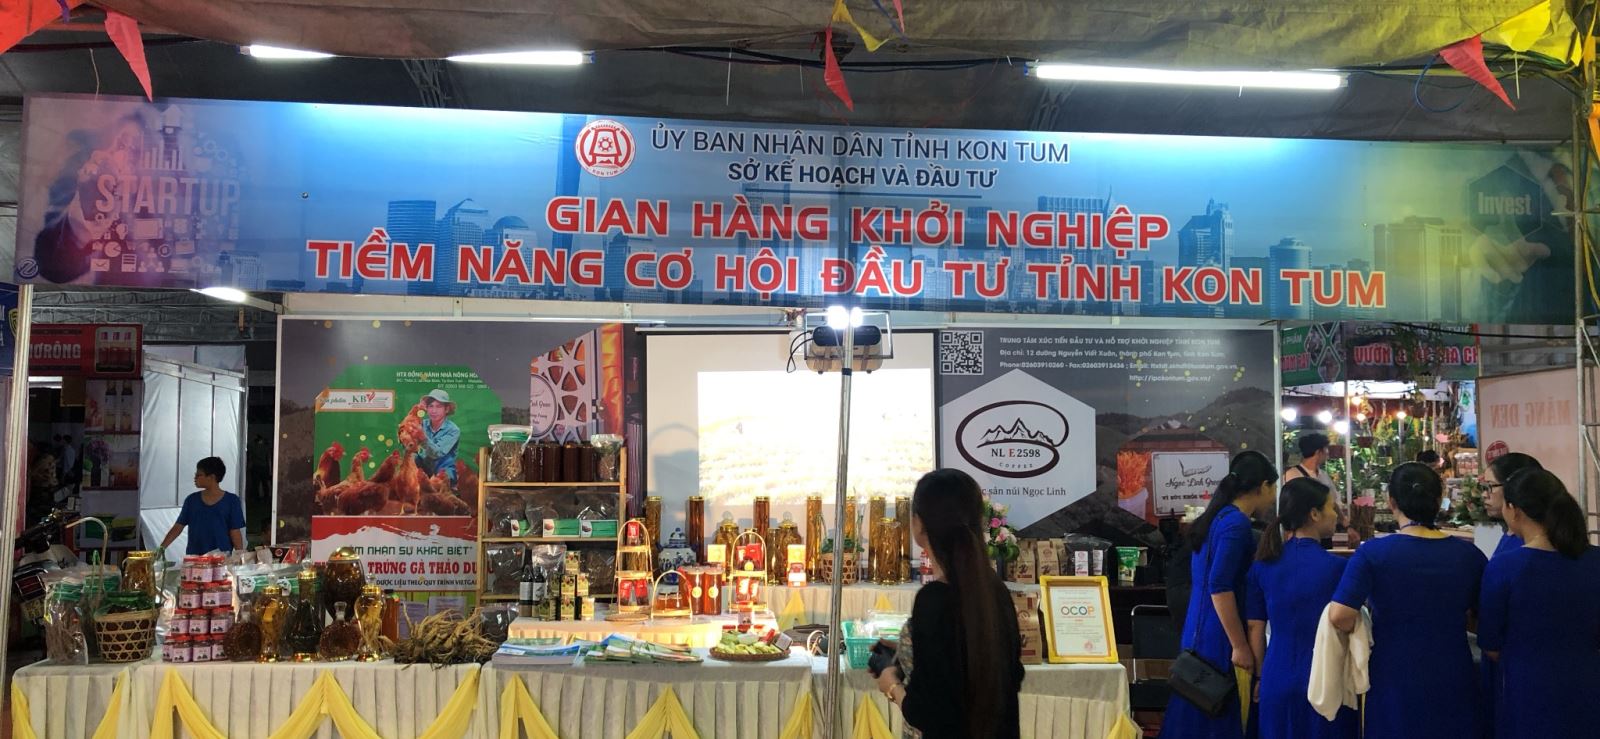 Địa điểm tổ chức Hội chợ, Triển lãm thương mại trên địa bàn tỉnh Kon Tum năm 2021